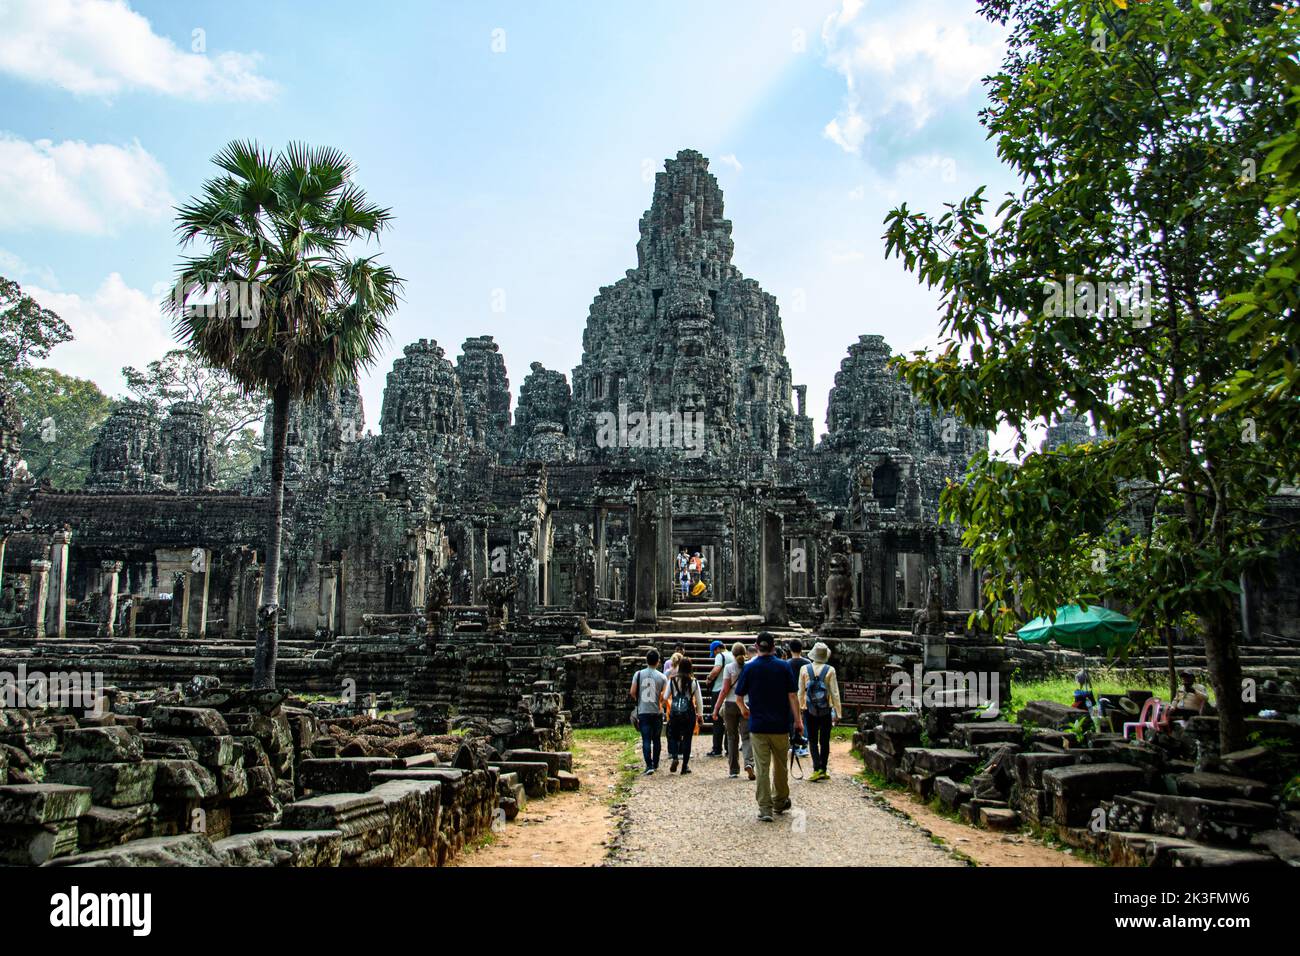 Cambodge. Siem Reap. Le parc archéologique d'Angkor. Touristes visitant le temple de Bayon temple hindou du 12th siècle Banque D'Images